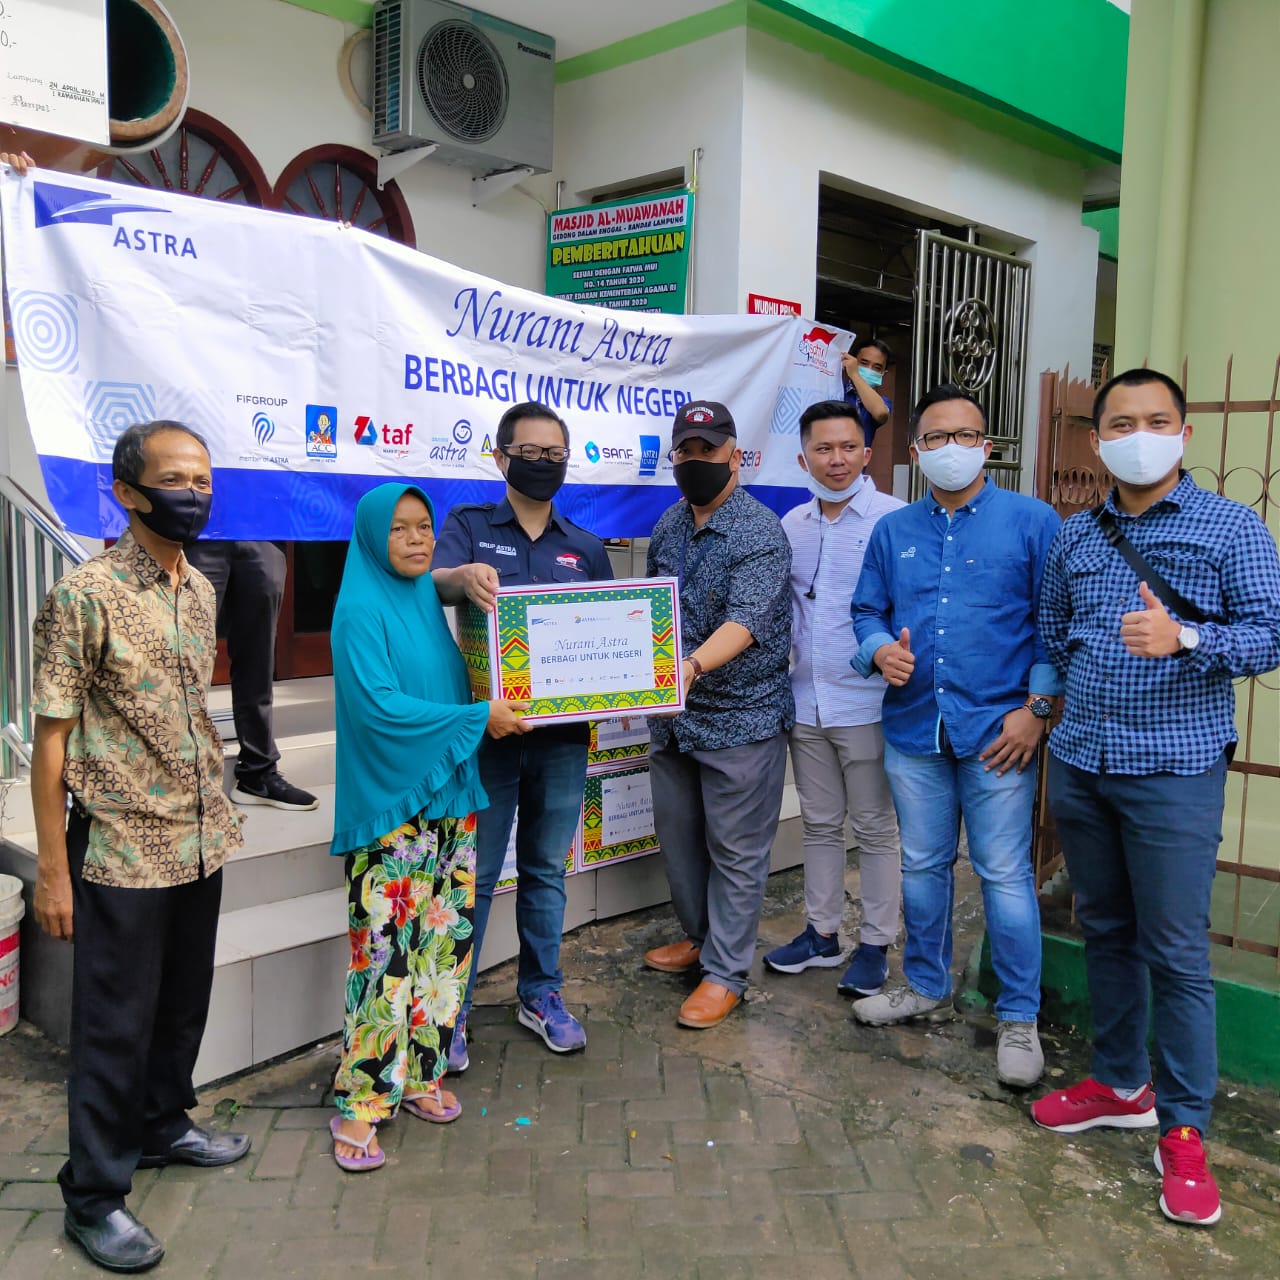 Berbagi untuk Negeri, Astra Distribusikan Sembako hingga APD untuk Warga Lampung